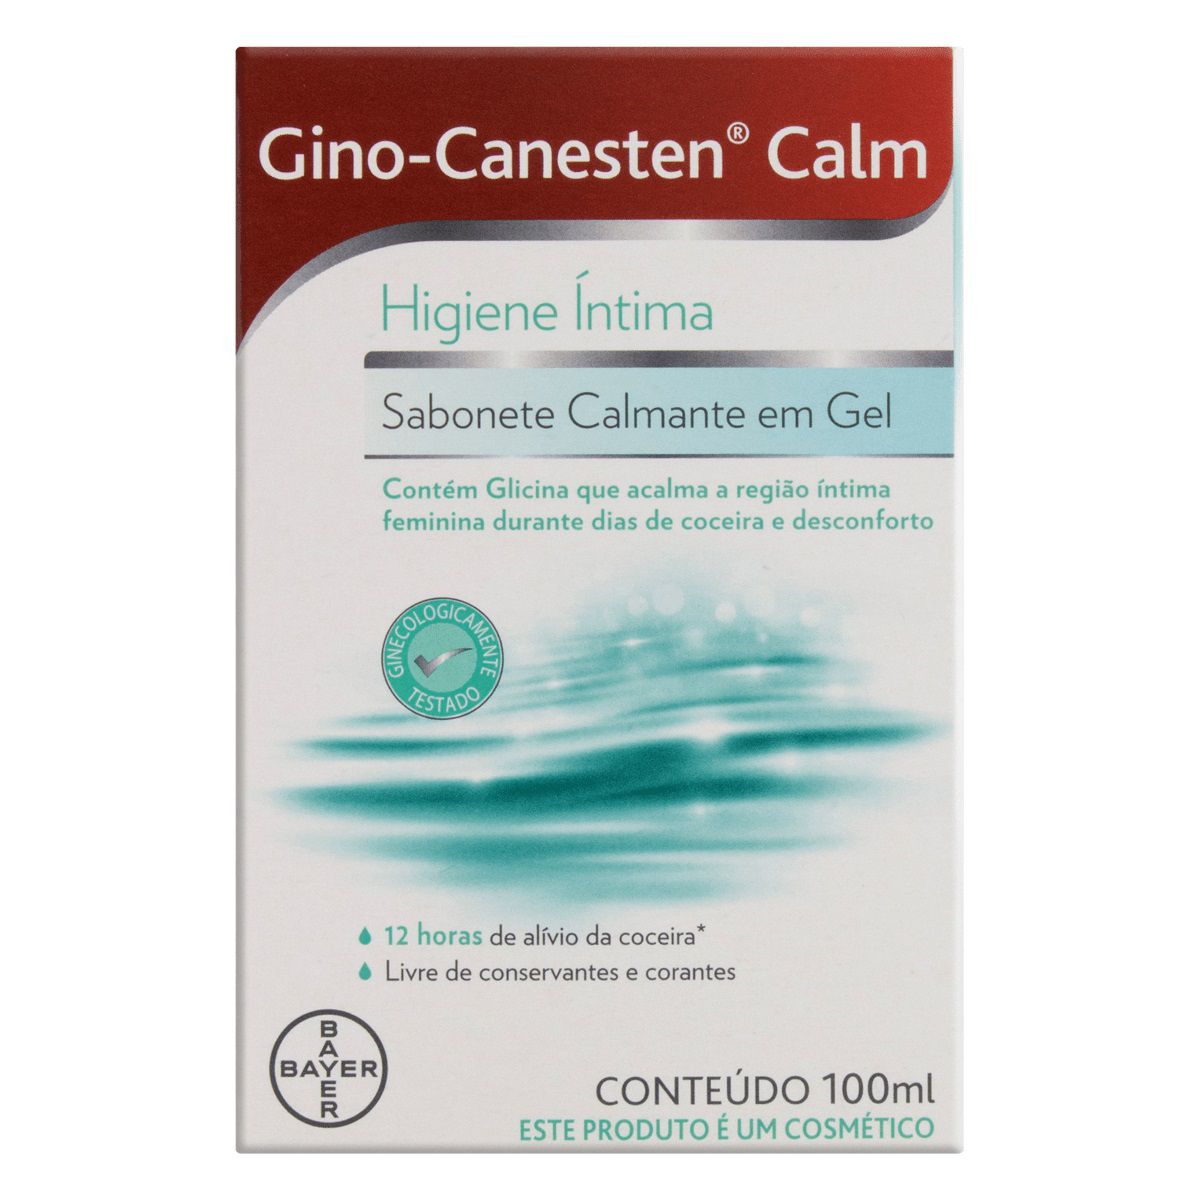 Sabonete Íntimo Calmante Em Gel Gino-Canesten Calm 100ml - Resilifarma -  Saúde em primeiro lugar